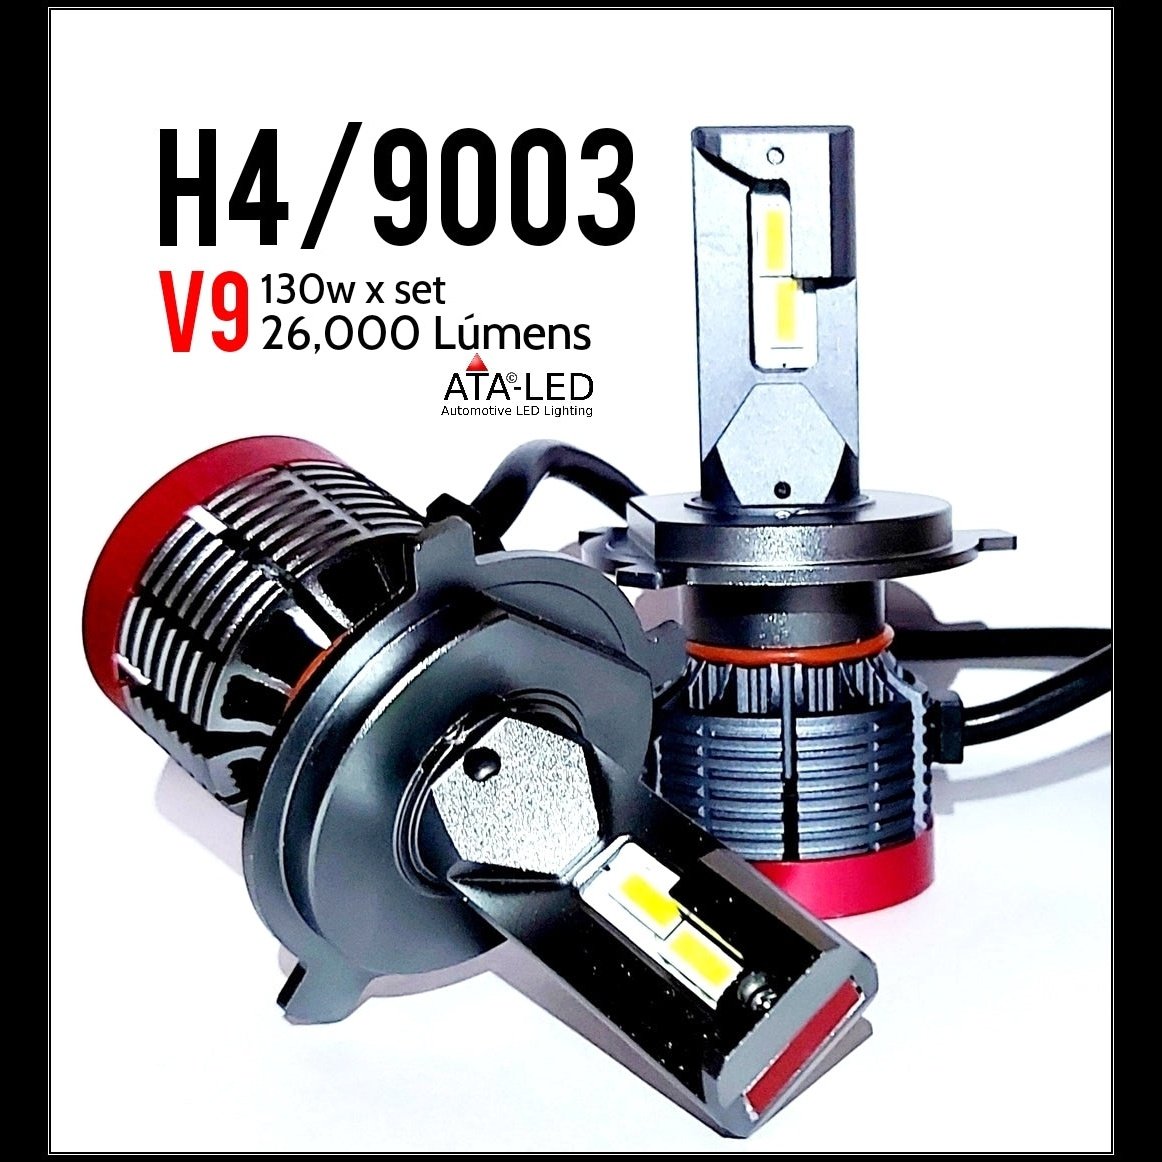 H4/9003 - V9 - 26,000 Lúmens - ATALED (1 Set) 2 x Headlight bulbs